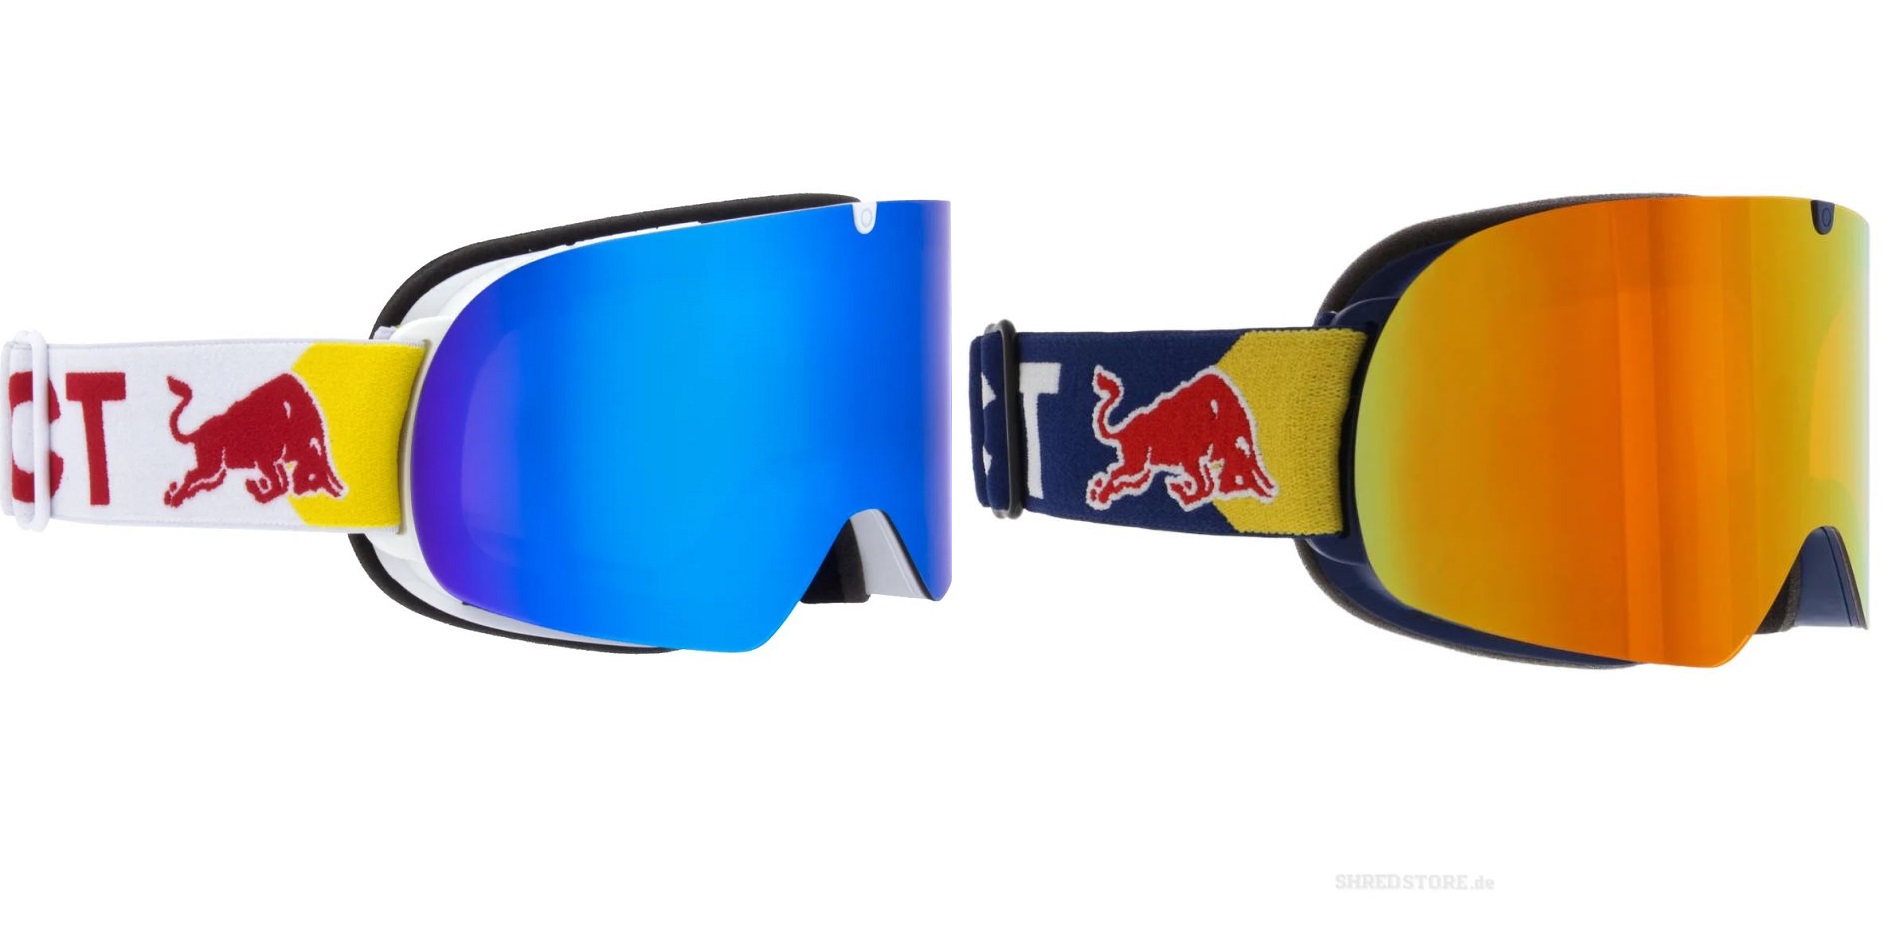 Red Bull SPECT - SOAR Skibrille